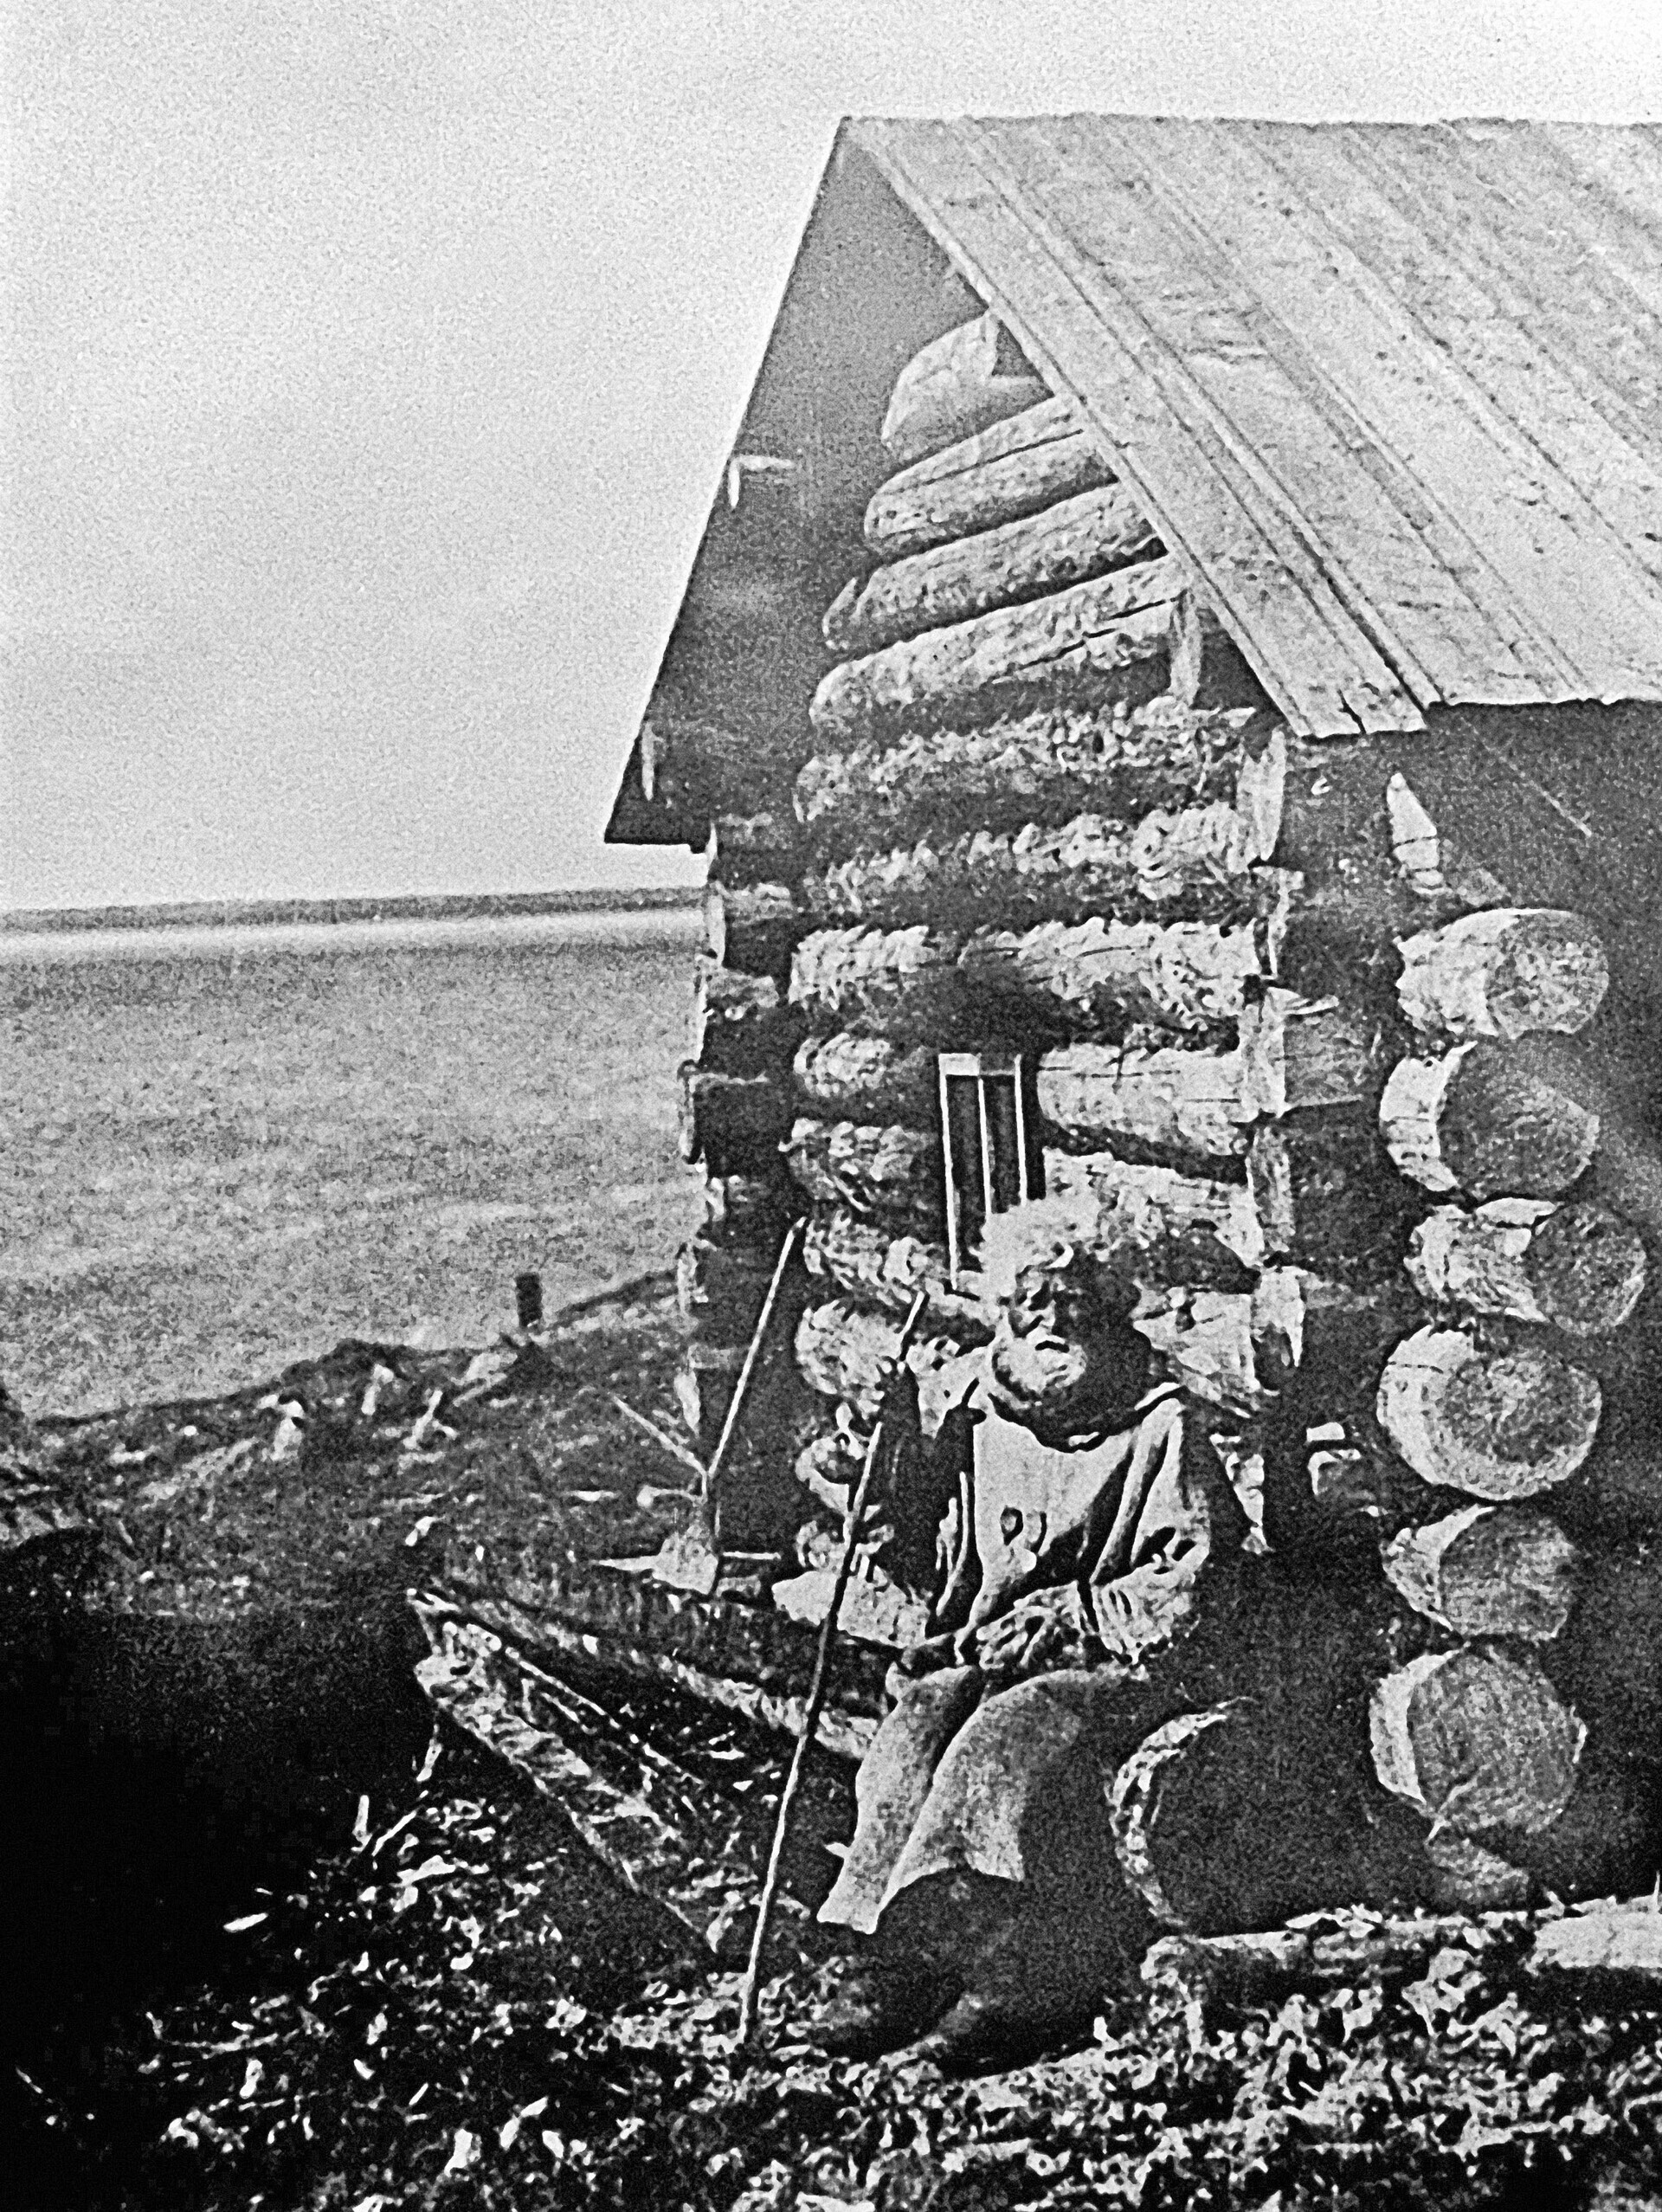 Eden prvih prebivalcev Murmanska, ribič Semjon Koržev, v svoji koči.